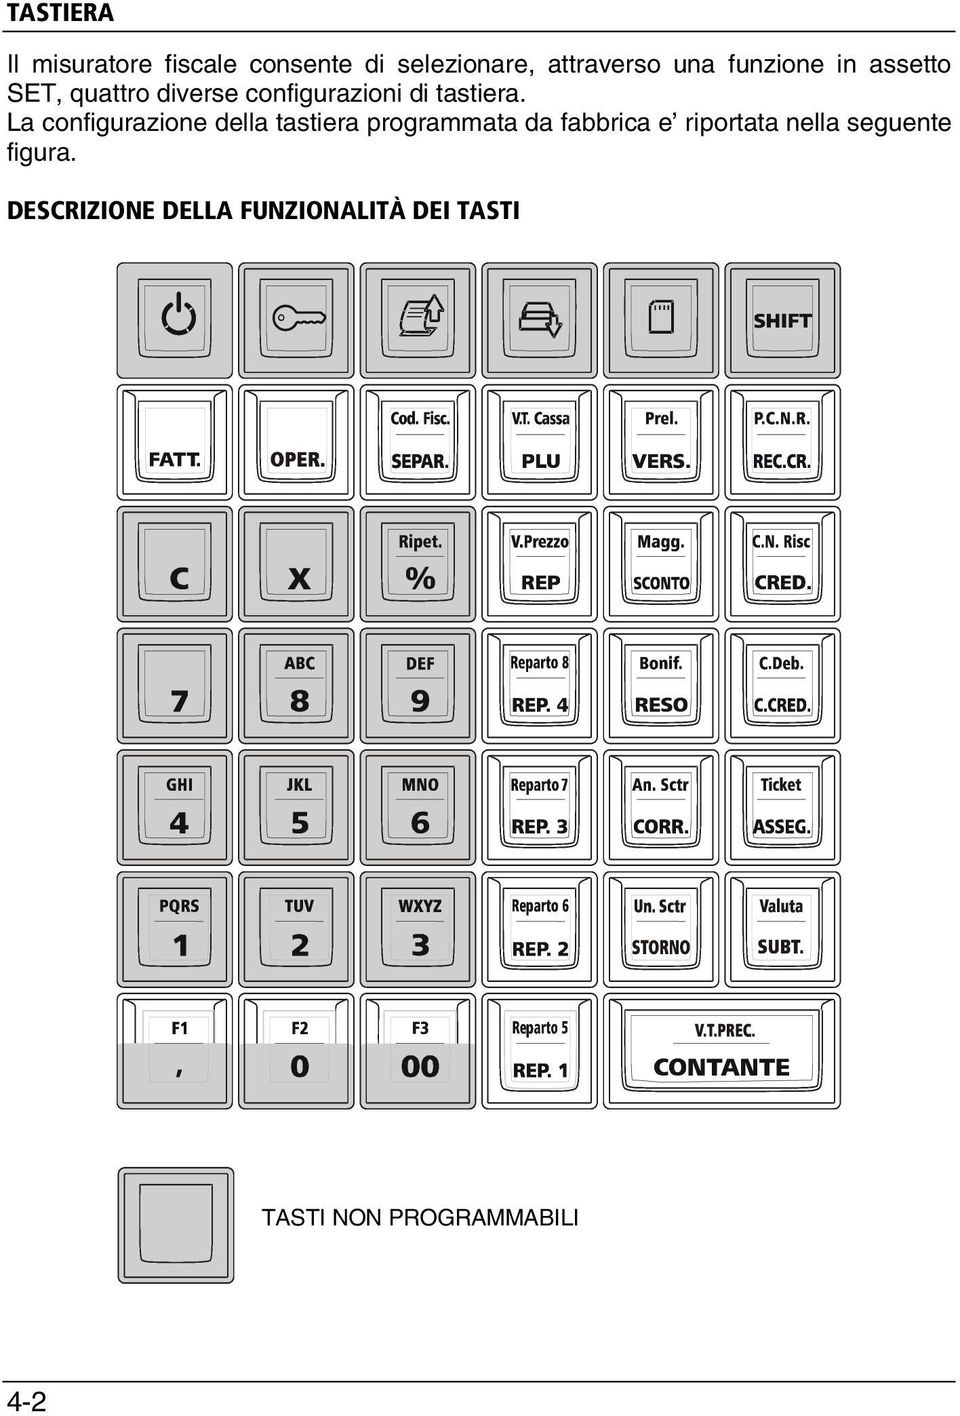 La configurazione della tastiera programmata da fabbrica e riportata nella